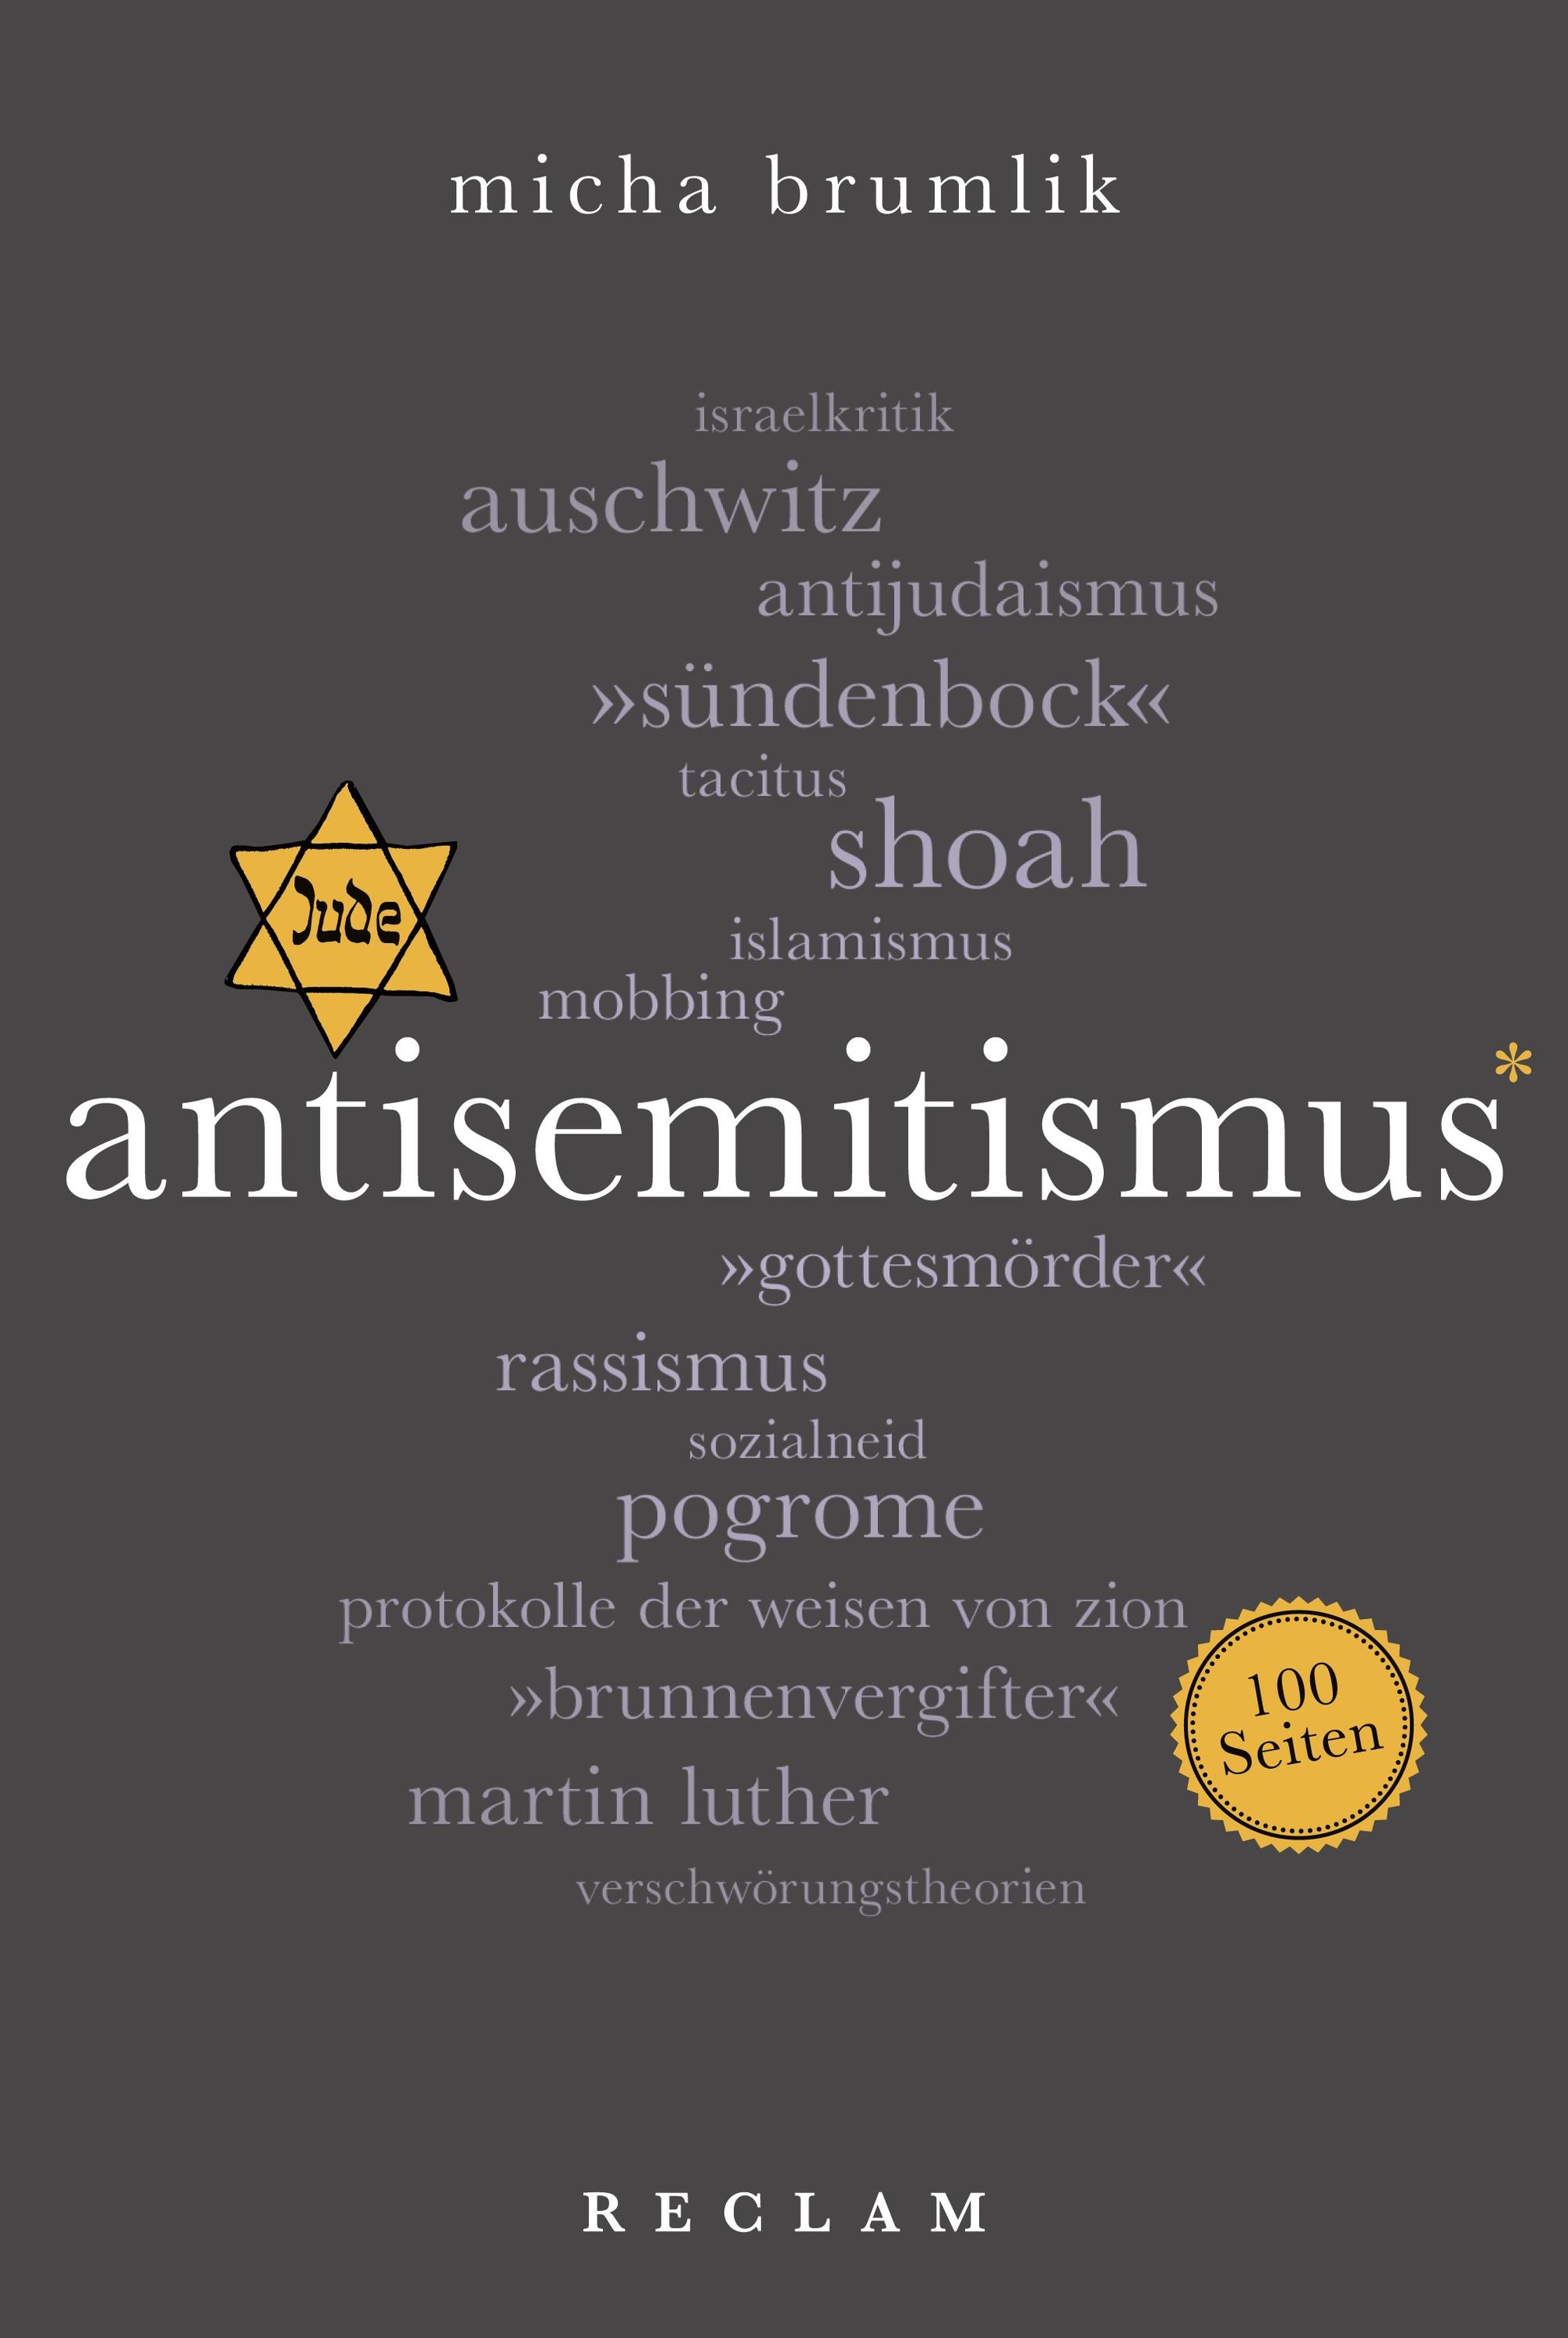 Cover_Brumlik_Antisemitismus